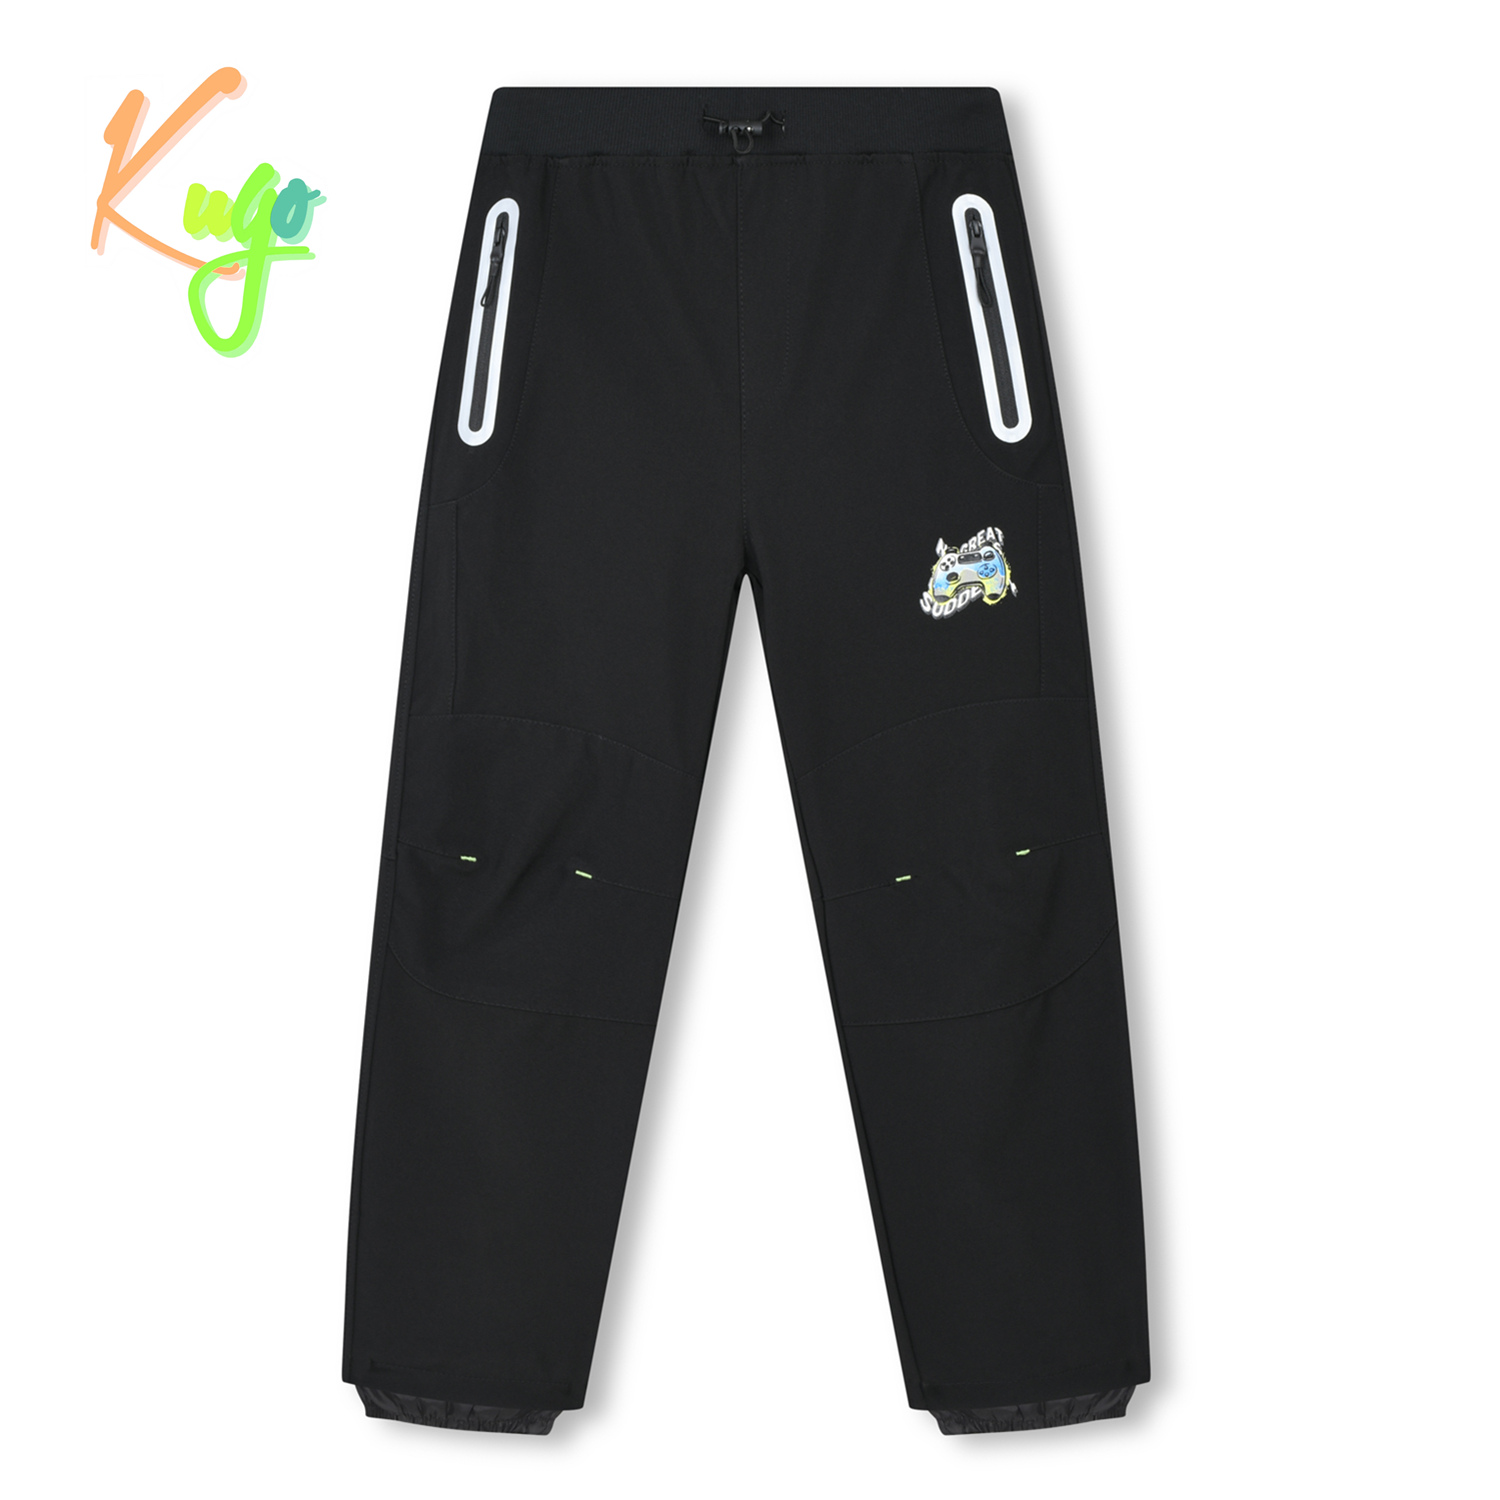 Chlapecké softshellové kalhoty - KUGO HK3118, celočerná Barva: Černá, Velikost: 146